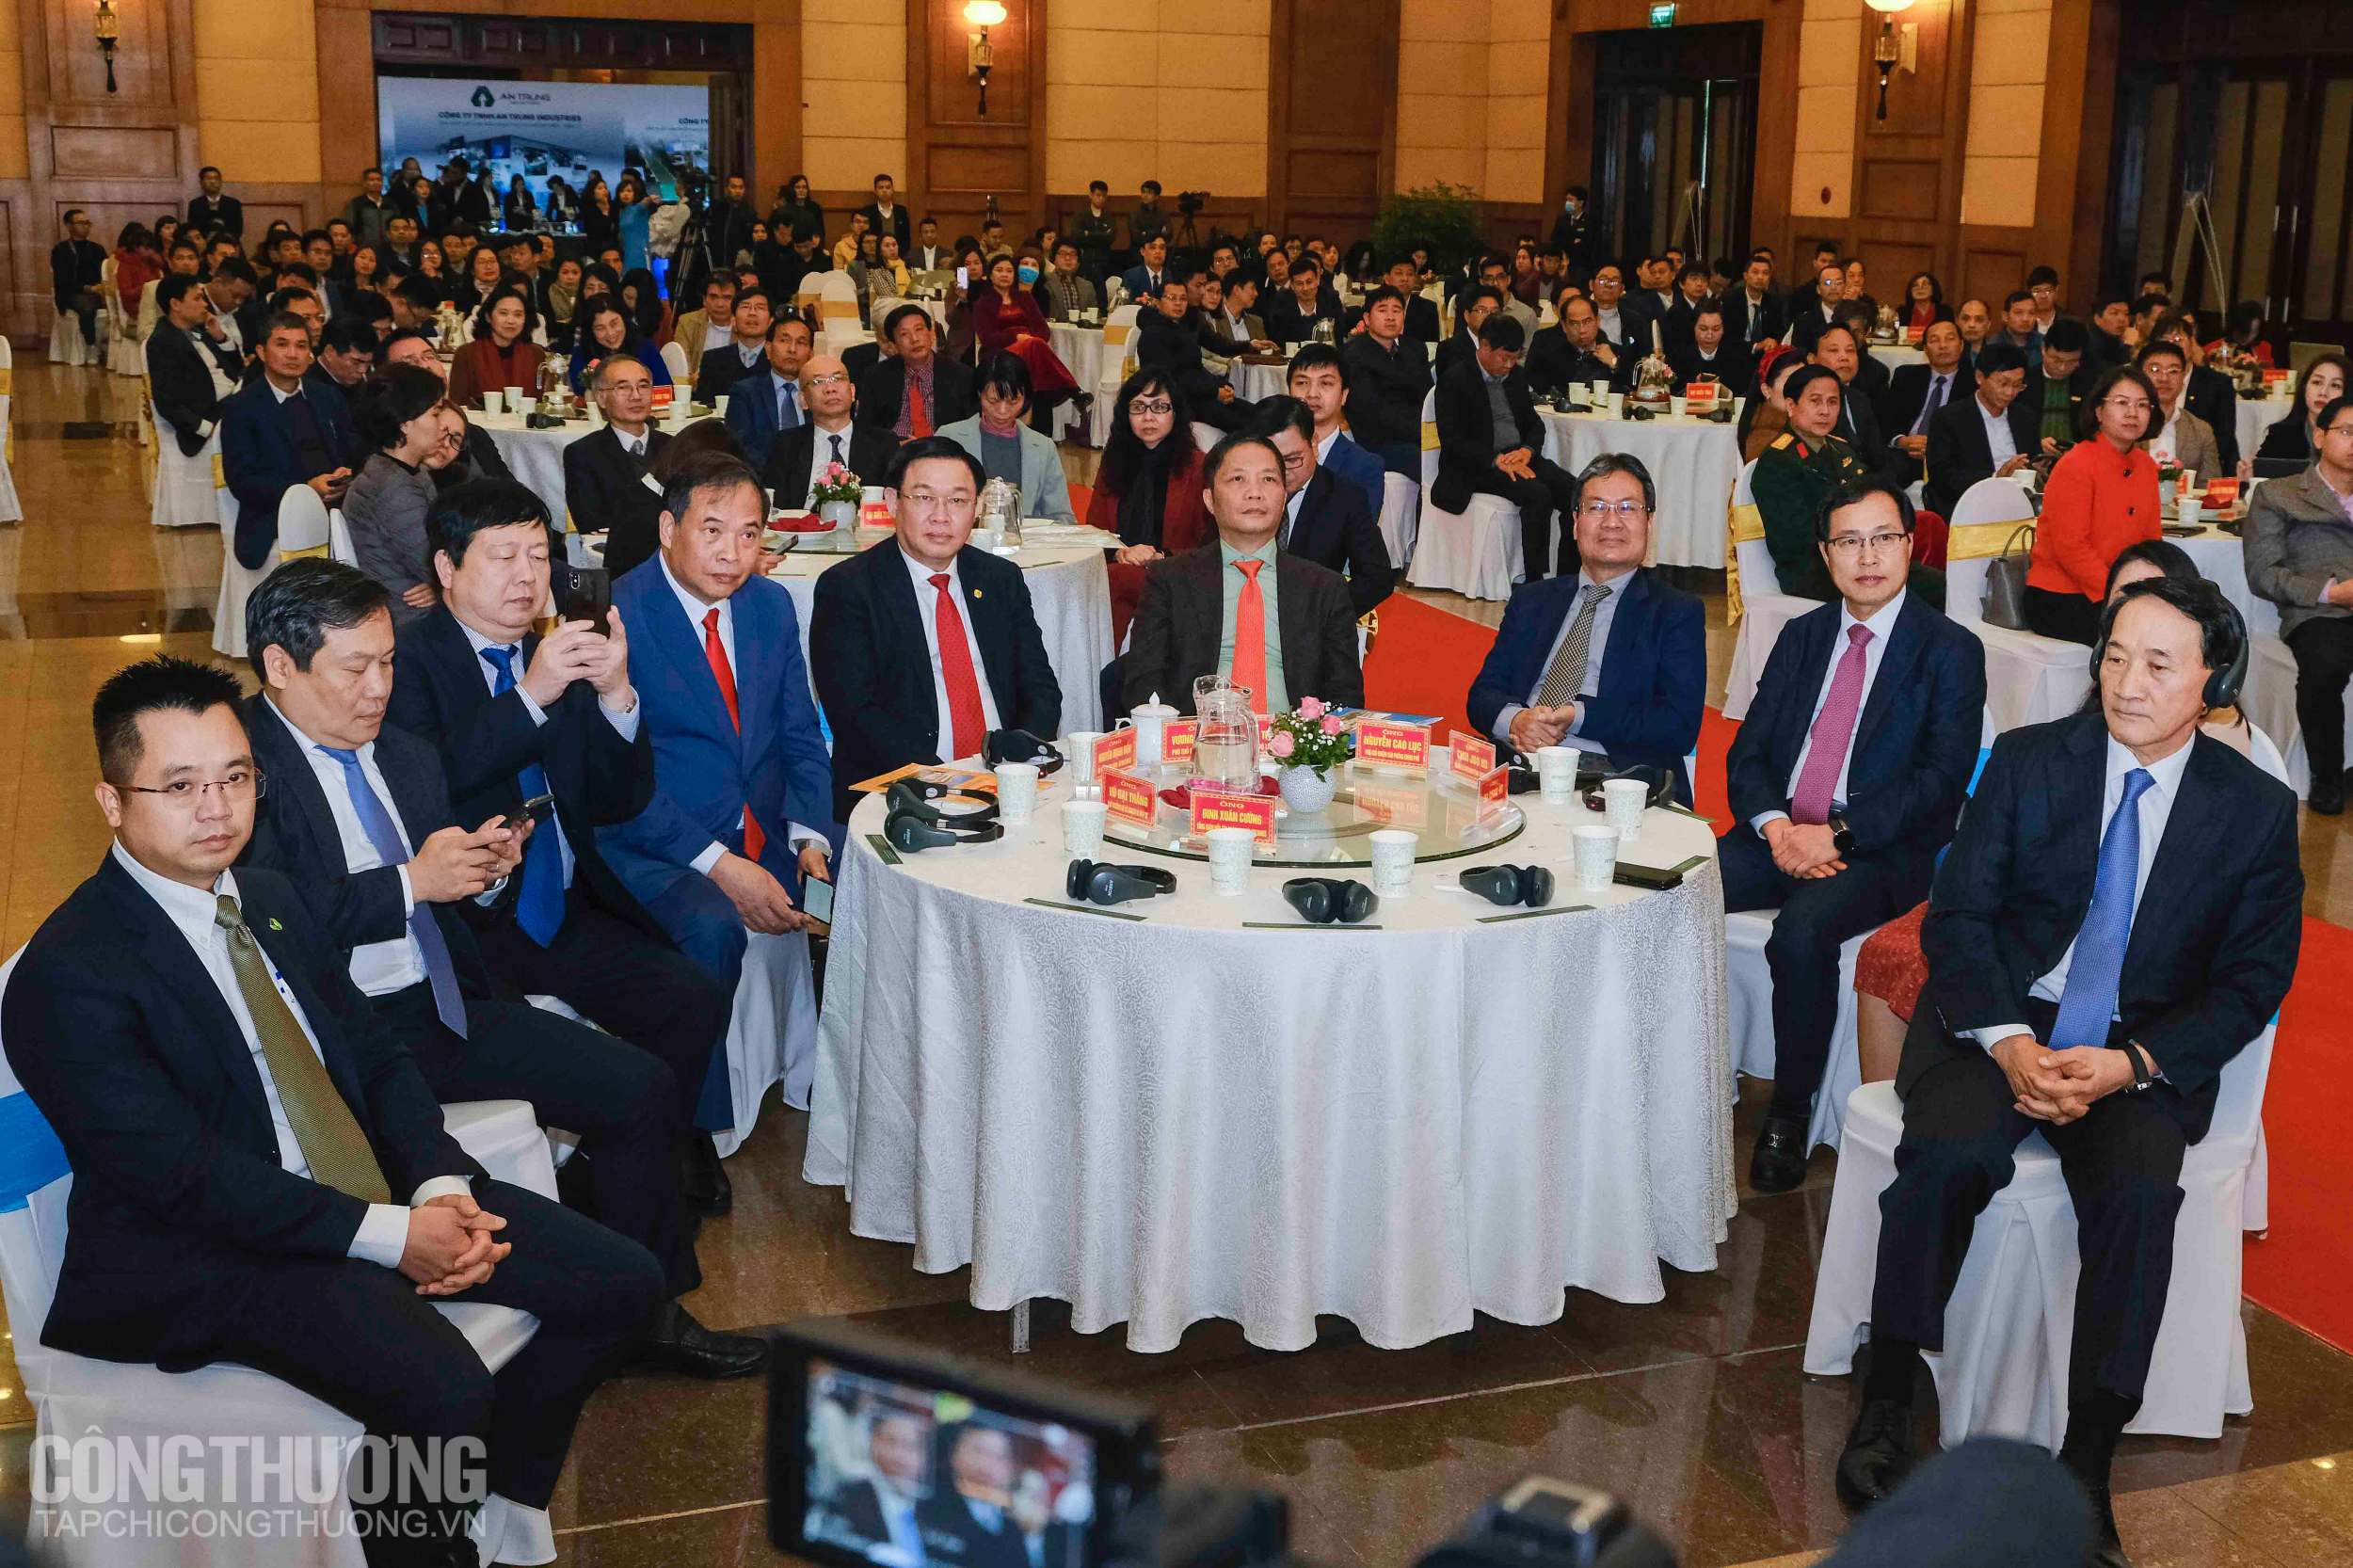 Phó Thủ tướng Vương Đình Huệ cùng Bộ trưởng Bộ Công Thương, lãnh đạo Samsung Việt Nam, lãnh đạo tỉnh Hải Dương và đại diện doanh nghiệp công nghiệp hỗ trợ trên địa bàn tỉnh